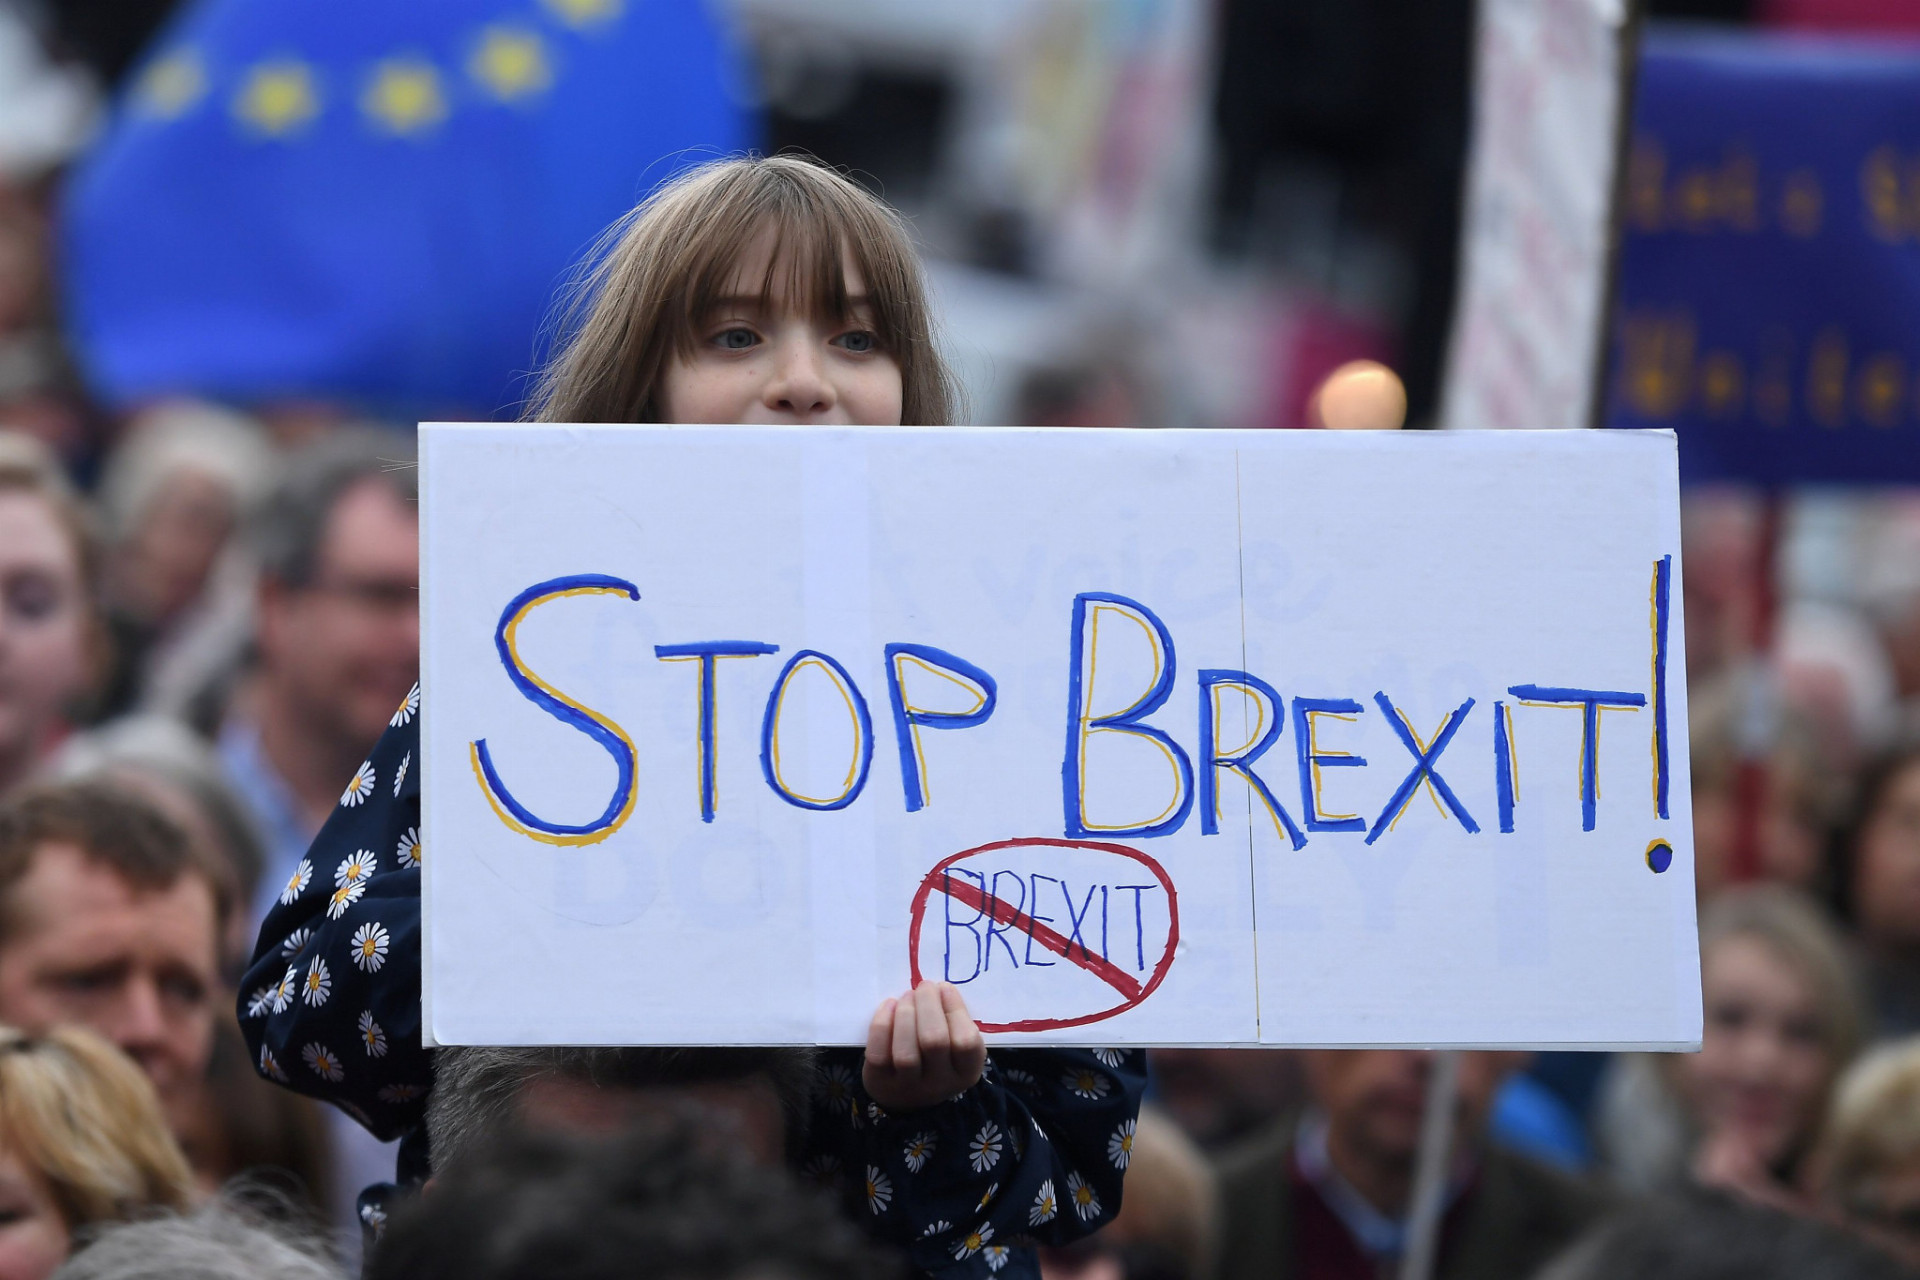 Októbrové demonštrácie nasvedčujú tomu, že hlasovanie o brexite by dnes možno dopadlo inak.